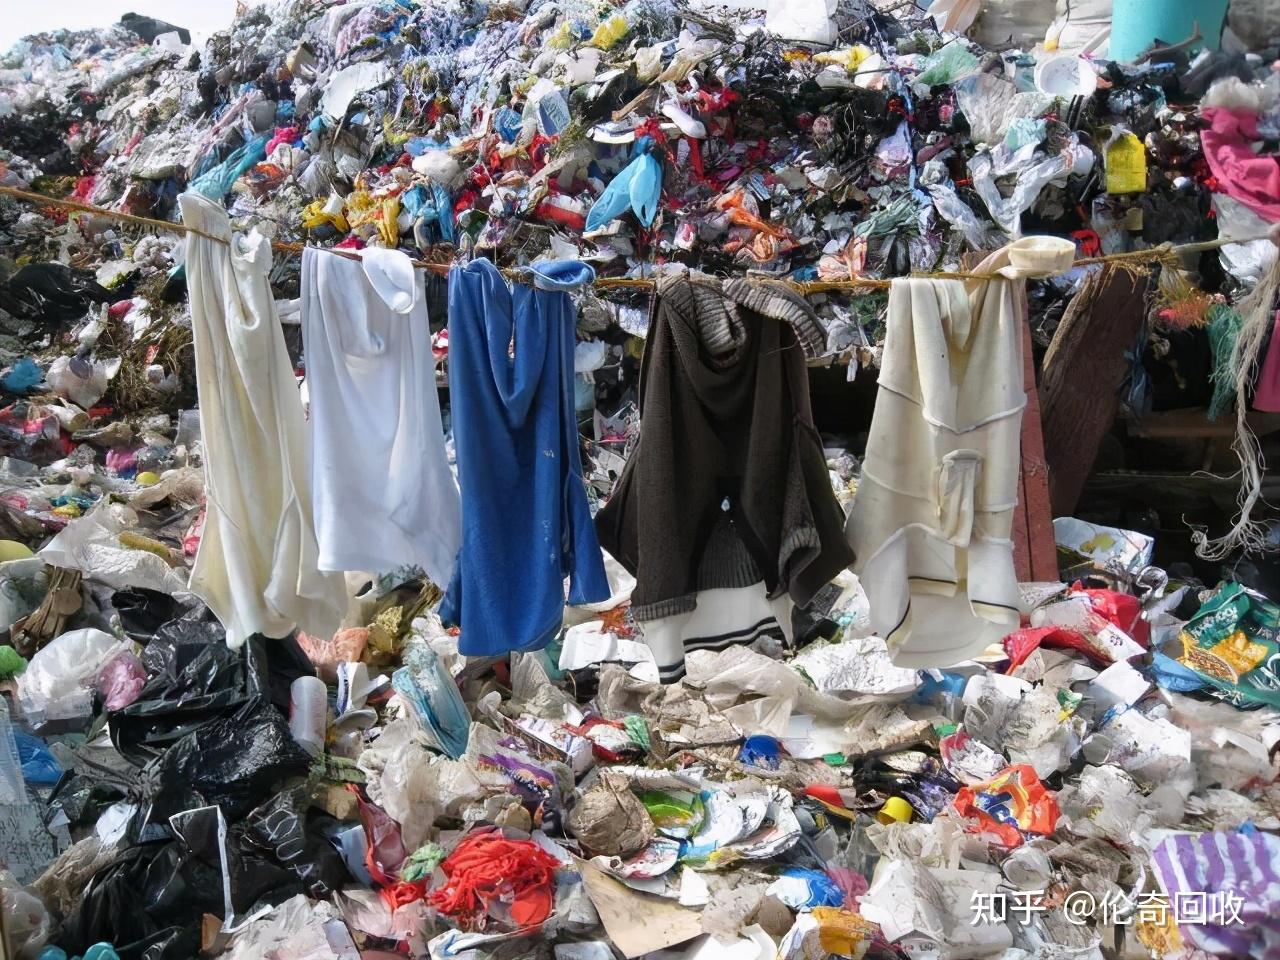 废旧纺织品造成的环境污染 与资源浪费现象让人触目惊心!